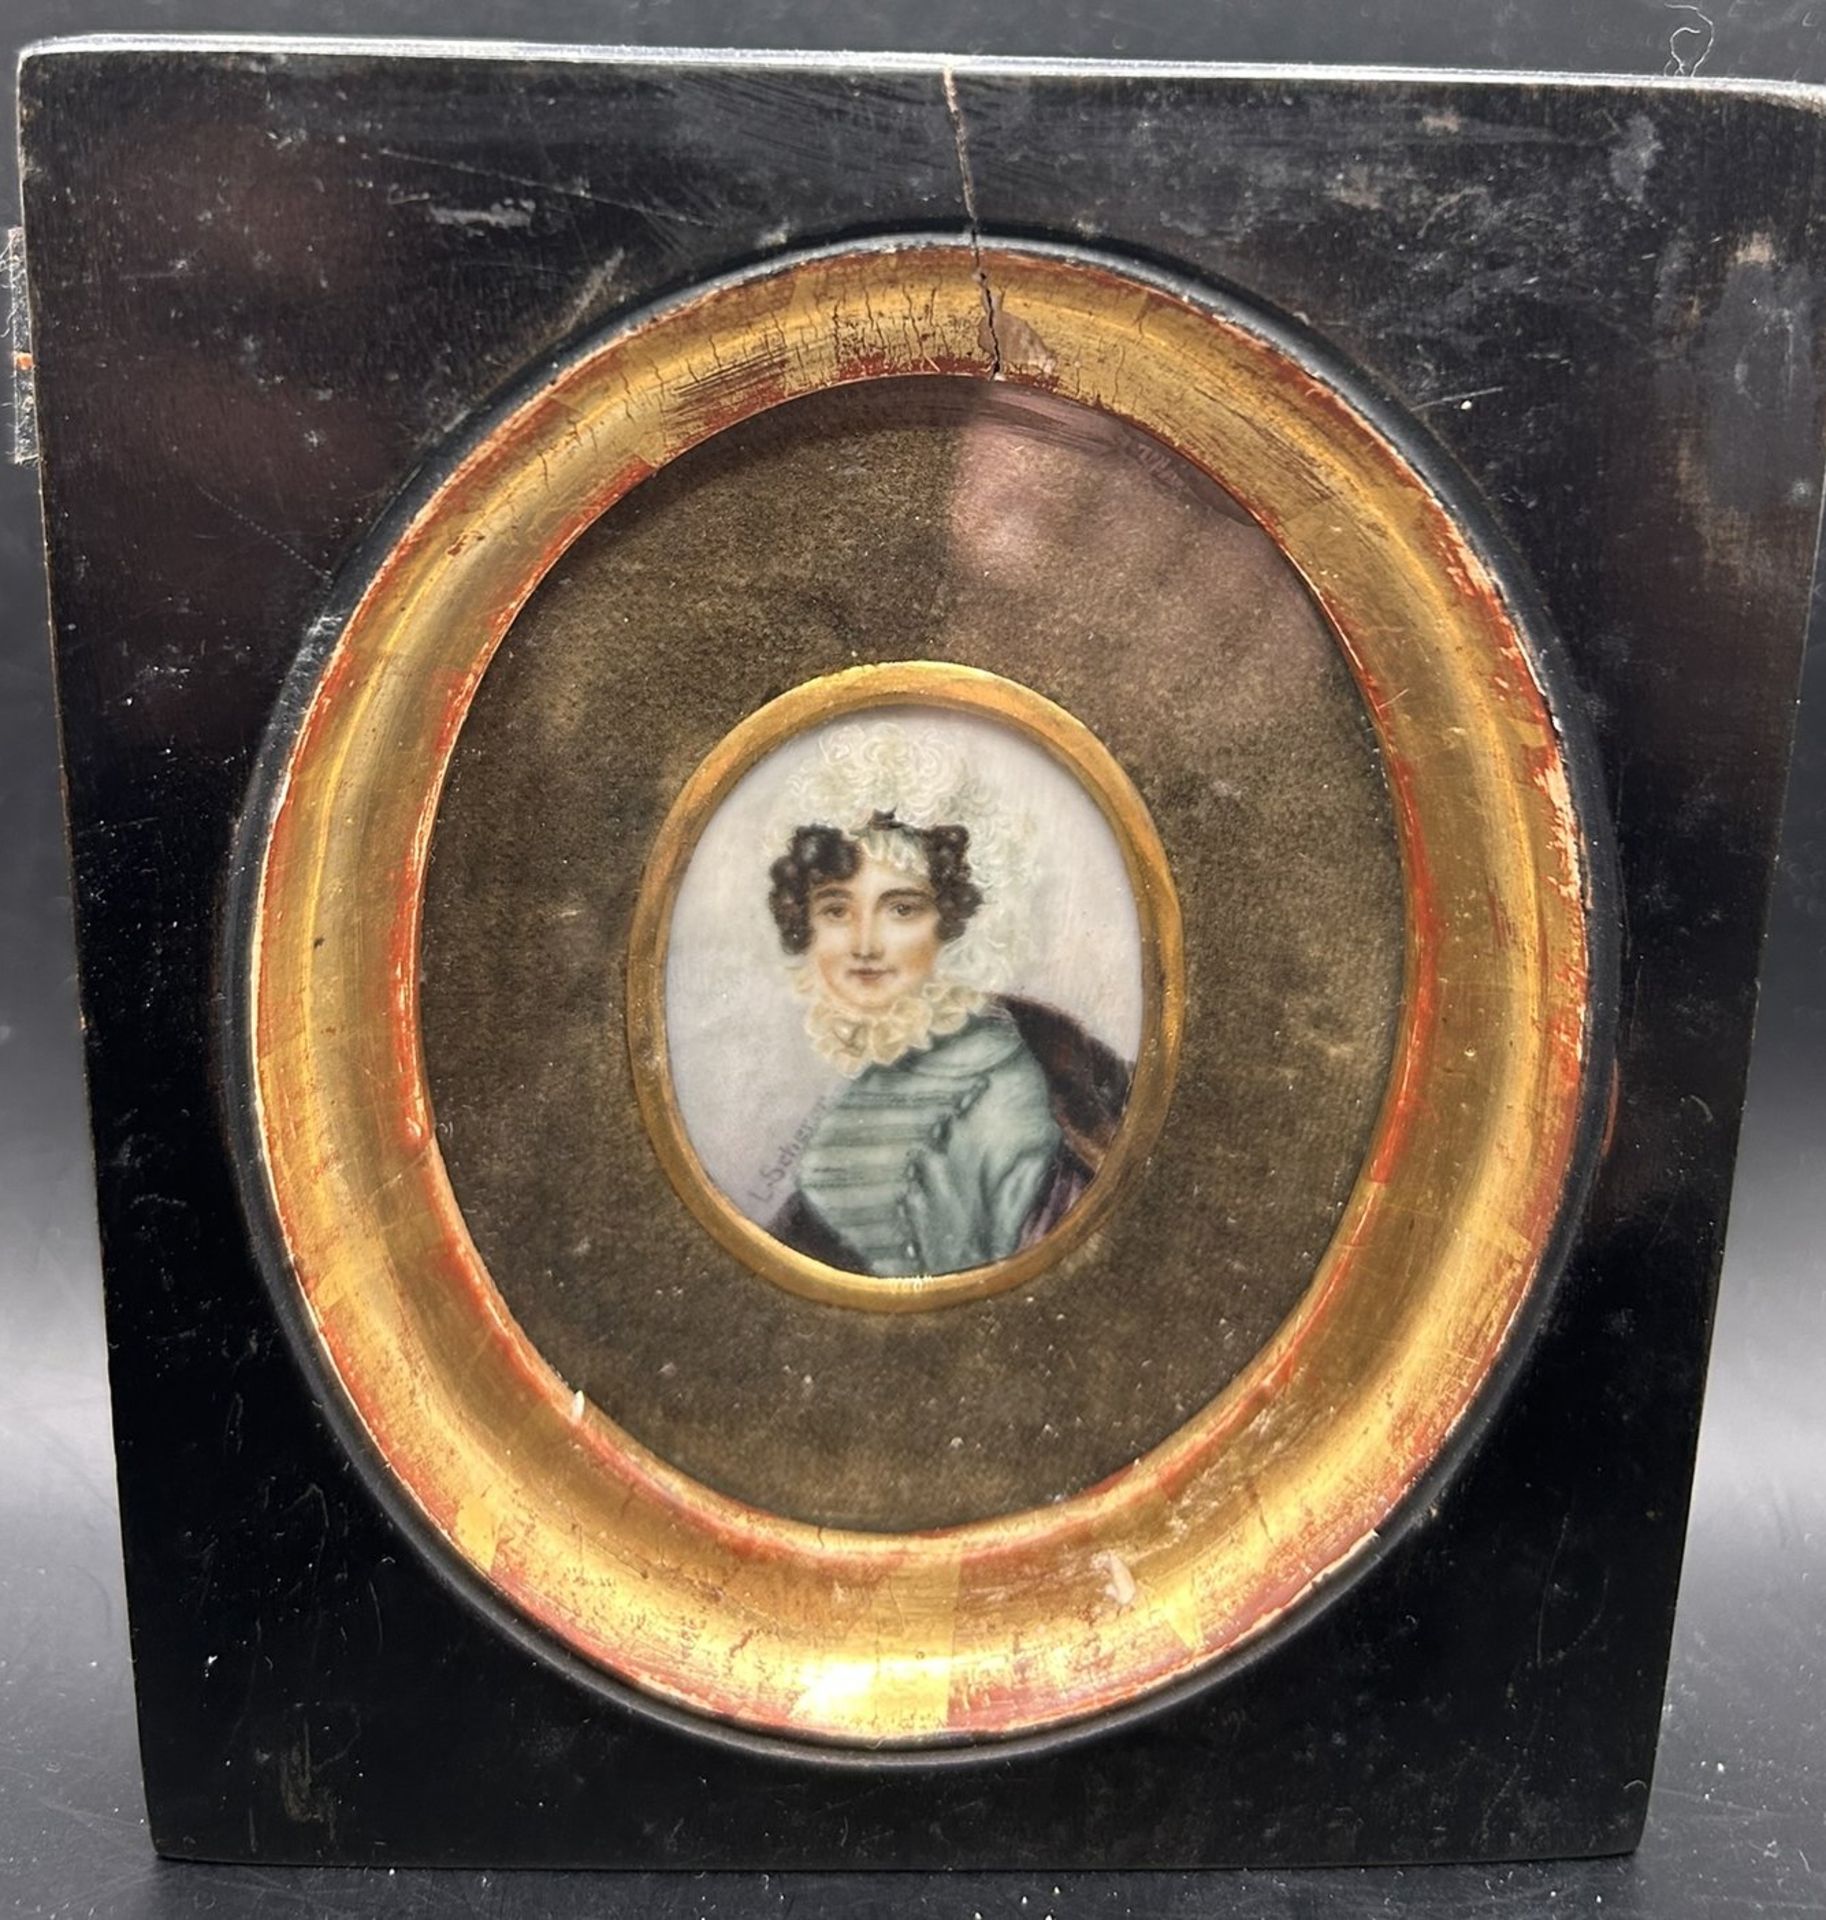 L. Scherer, Miniaturportrait einer jungen Frau, um 1850, verso bezeichnet "nach Carl von Saar" 1828 - Bild 2 aus 3